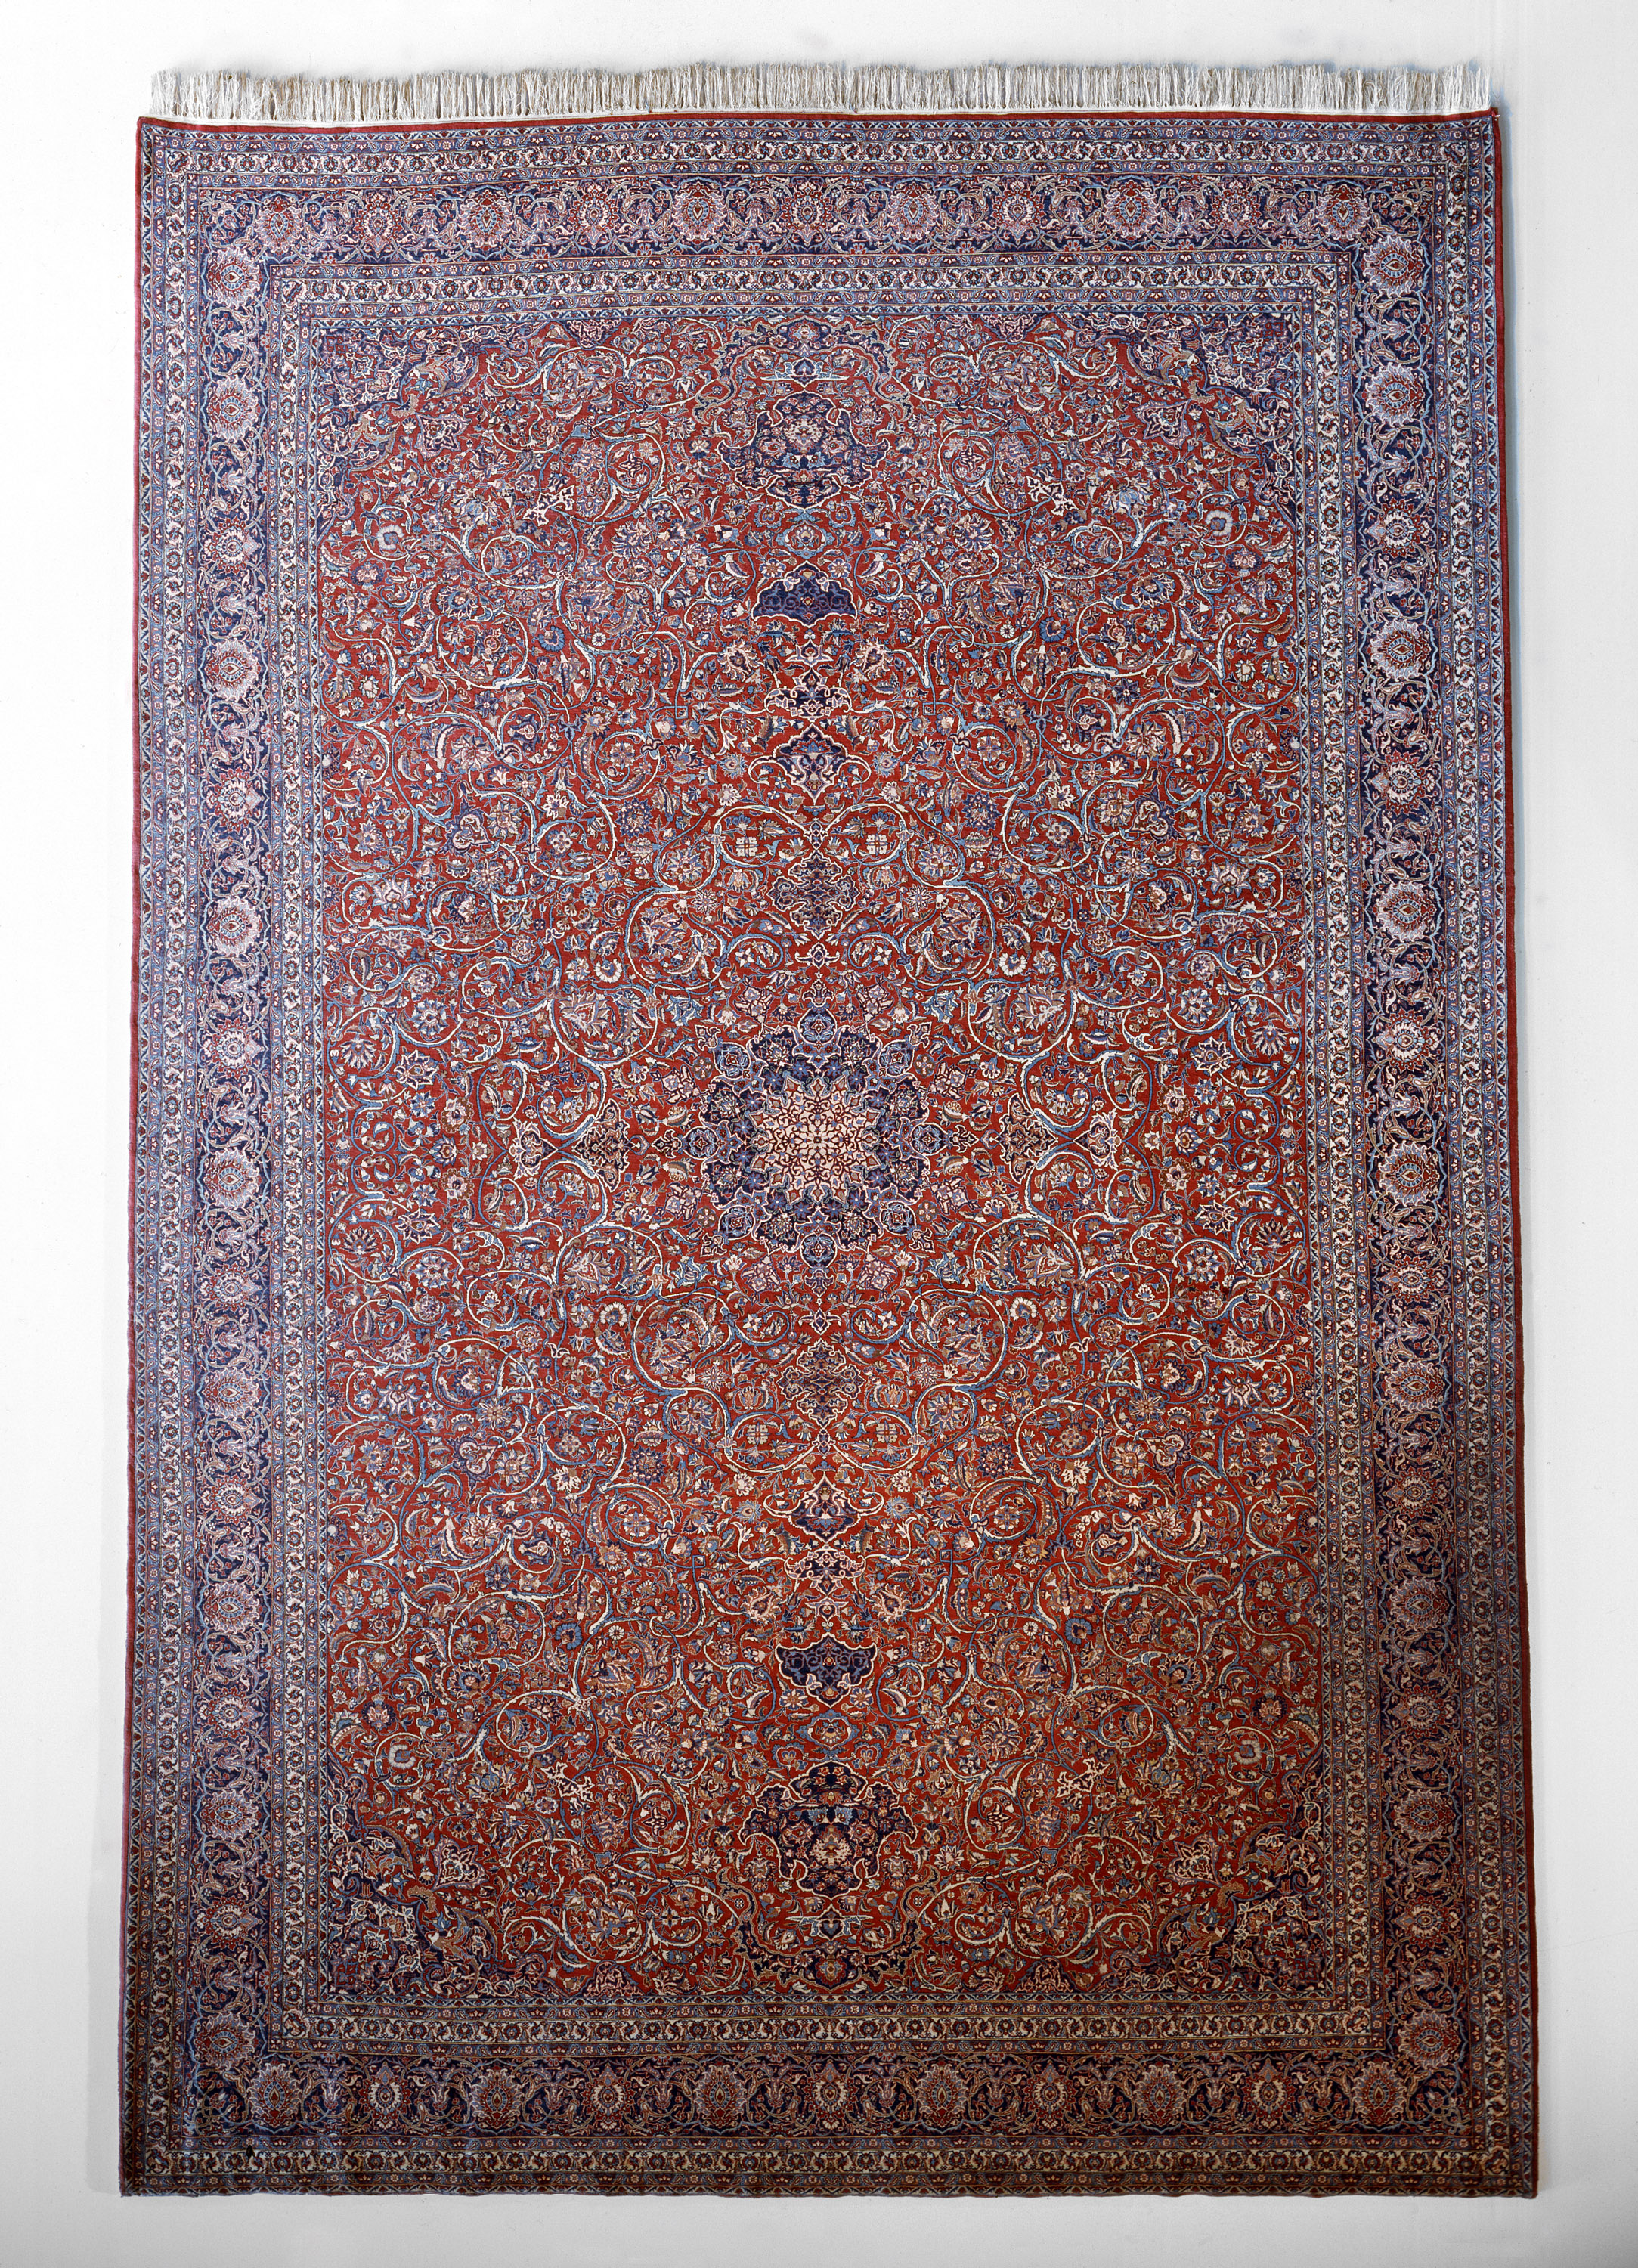 伊斯法罕波斯地毯, UNNY090G, 1952, 伊朗 